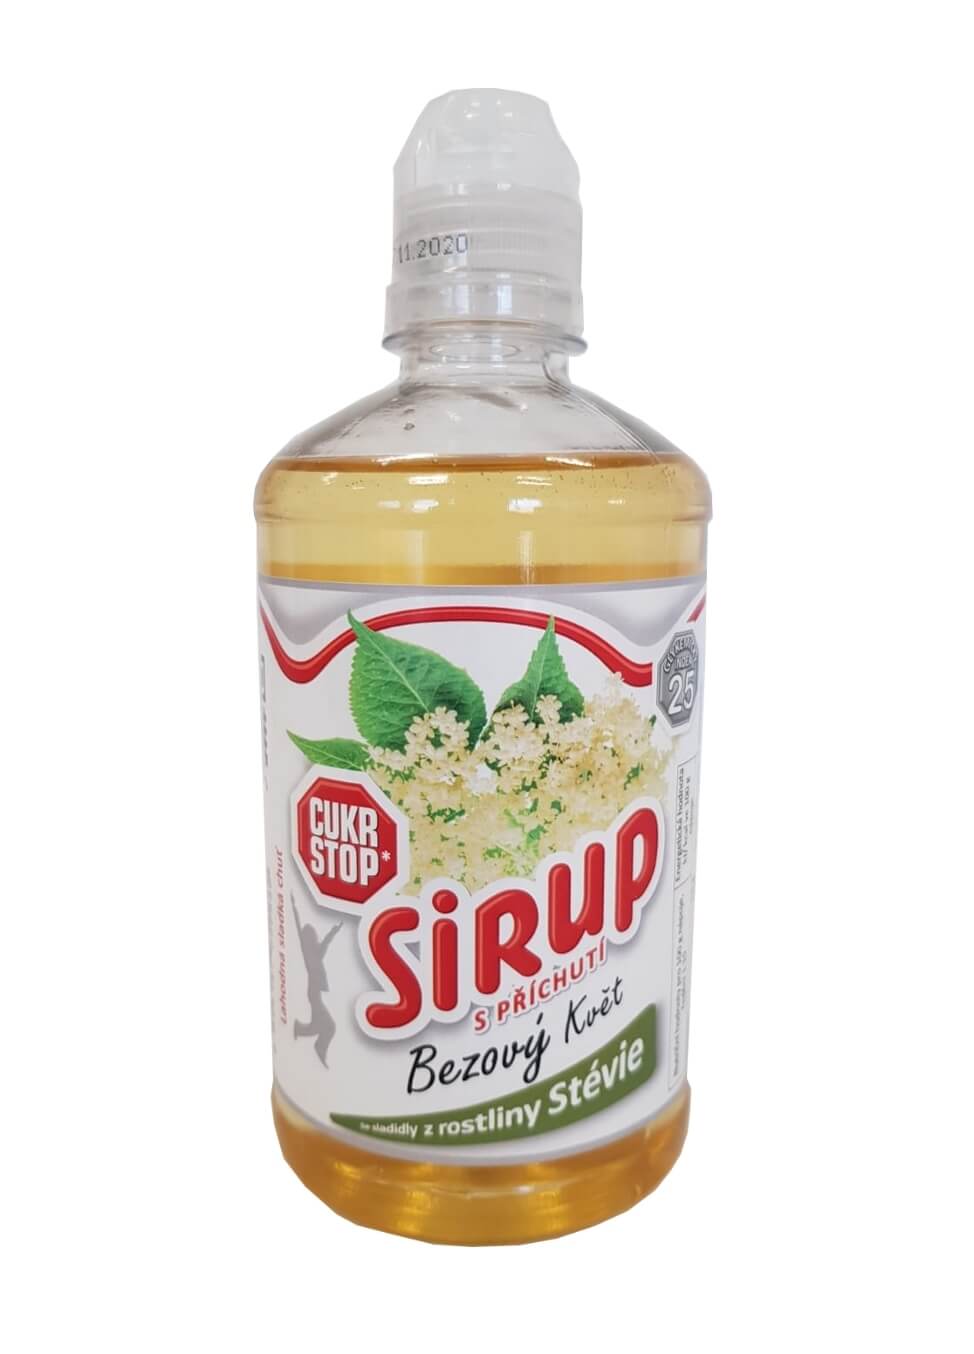 Zobrazit detail výrobku CukrStop Sirup se sladidly z rostliny stévie - bezový květ 650 g + 2 měsíce na vrácení zboží